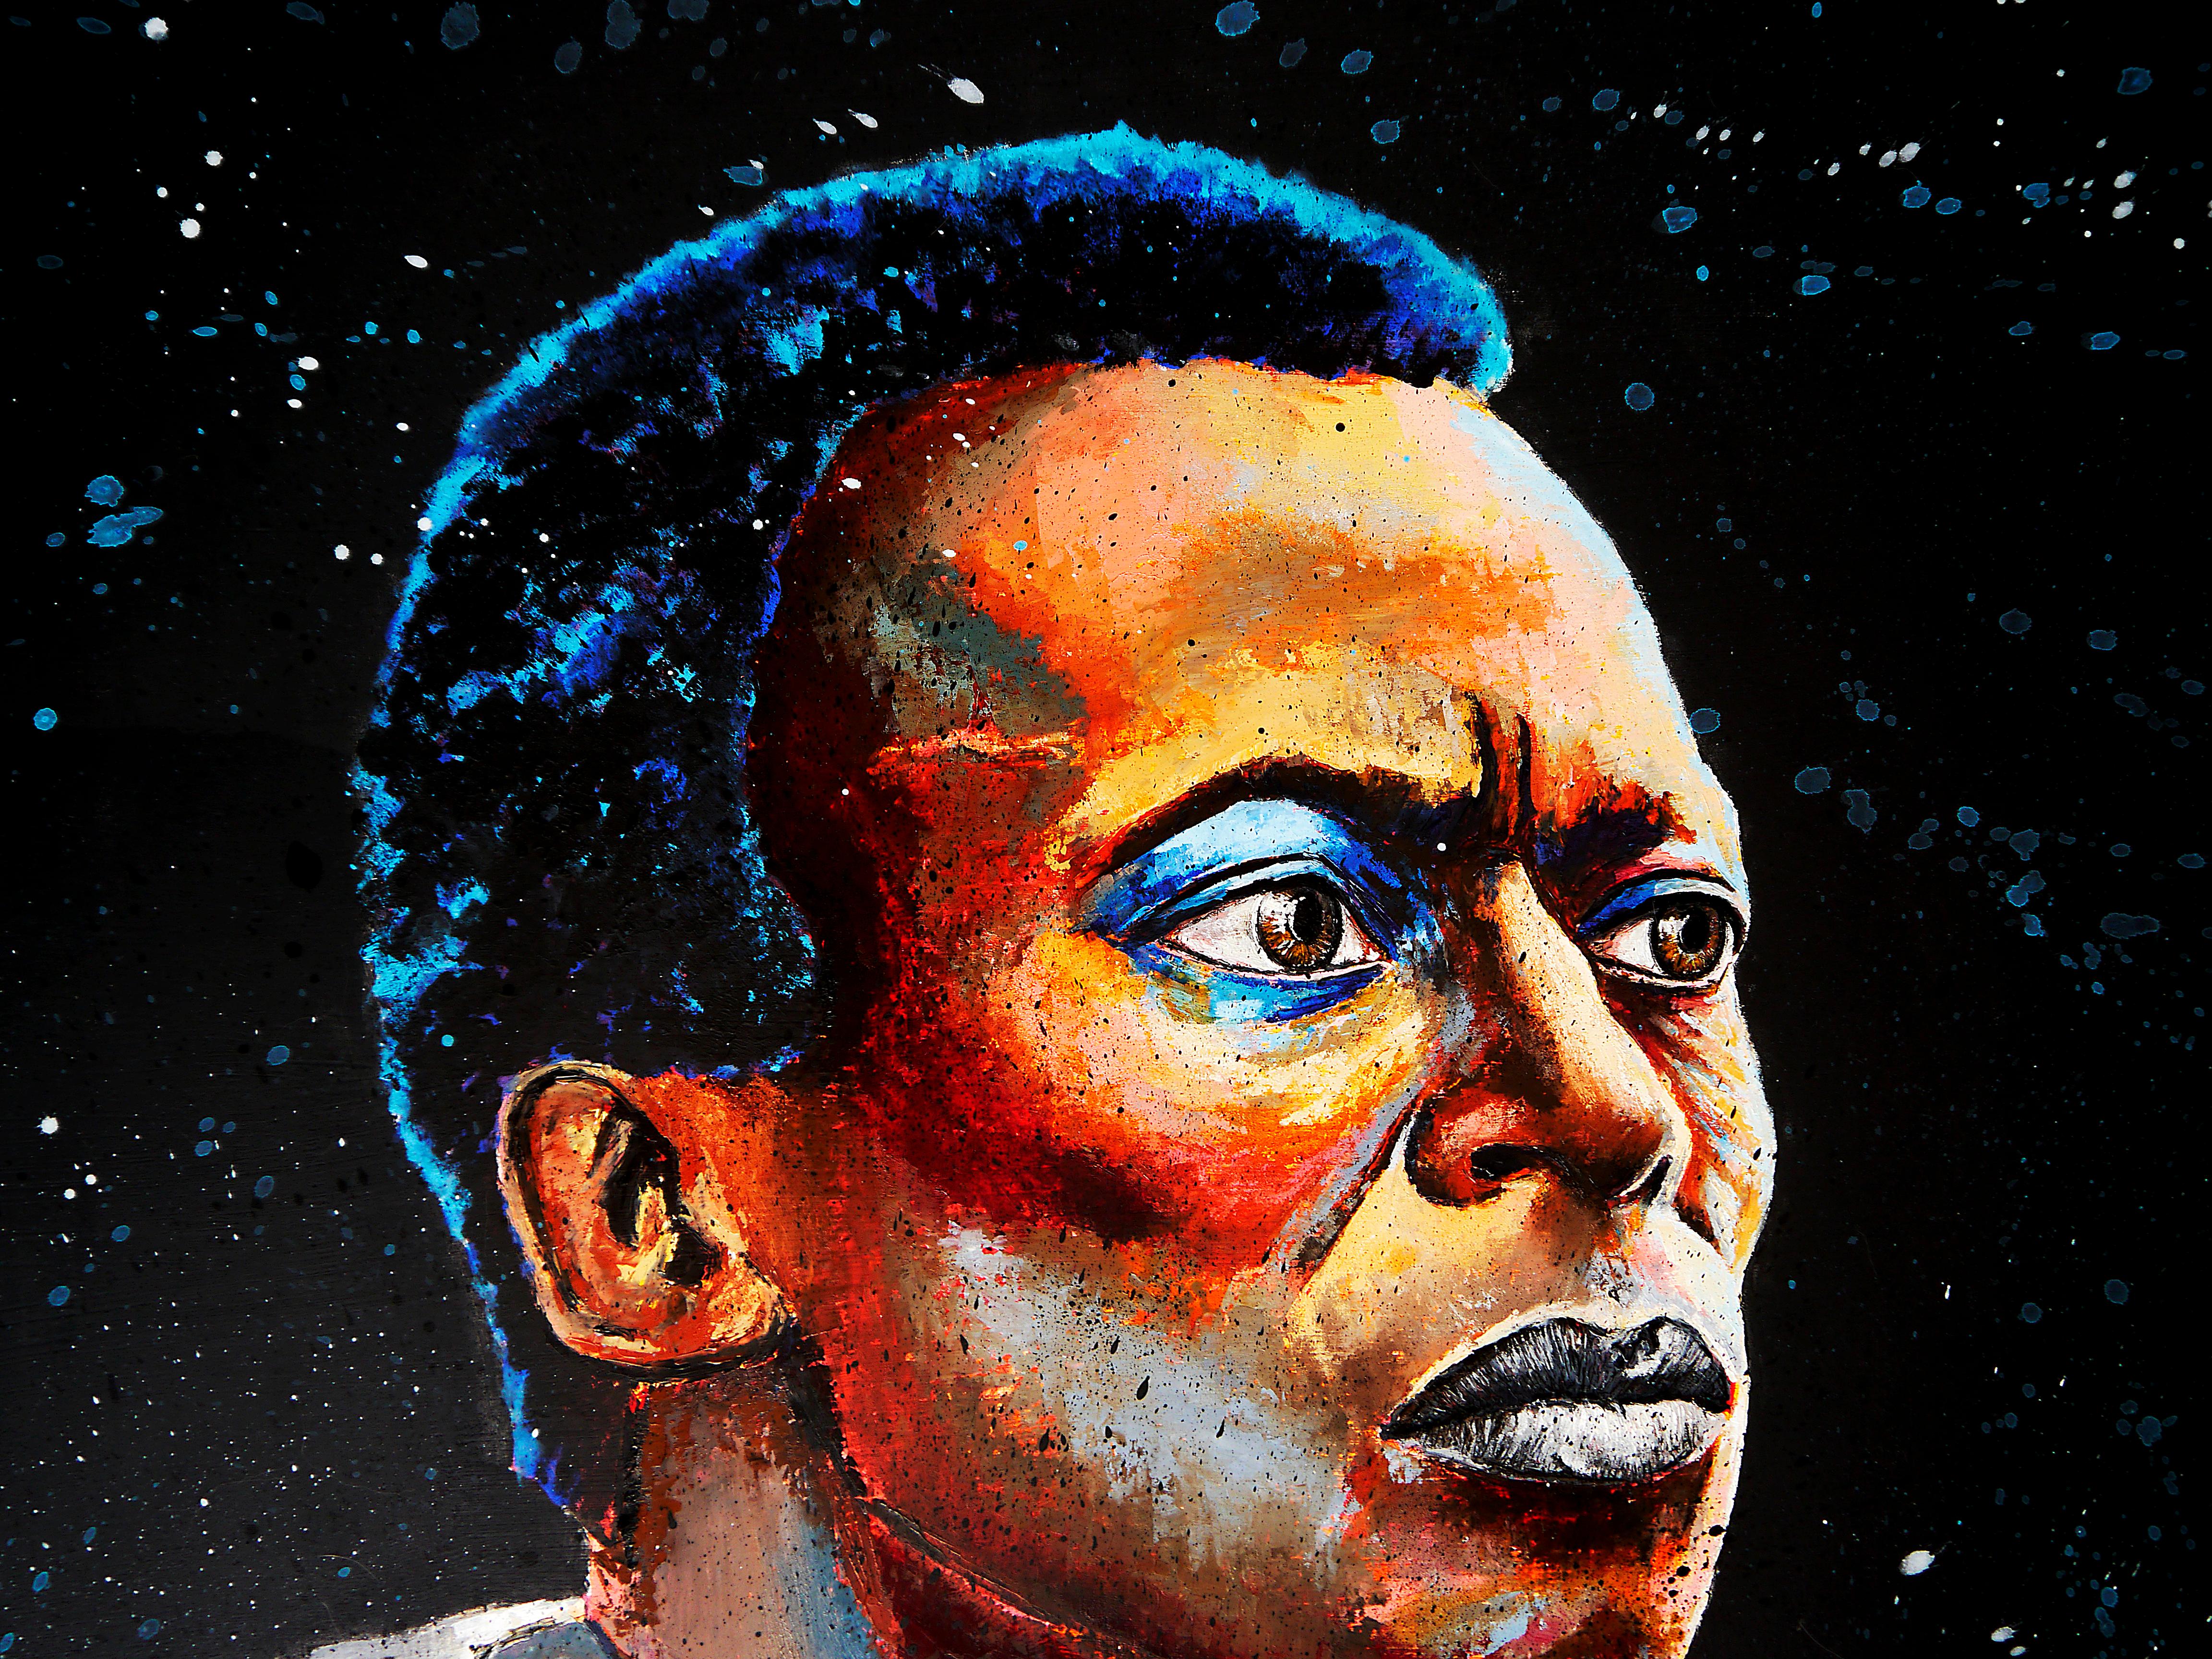 Portrait Miles Davis

Portrait de l'icône Miles Davis.

Technique : Acrylique, peinture à l'huile, encre de Chine sur toile 73x60cm /28,7x23,6in

》》R E A D Y -- T O -- H A N G《《

❶ → Œuvre originale signée. Certificat d'authenticité inclus.

❷ →